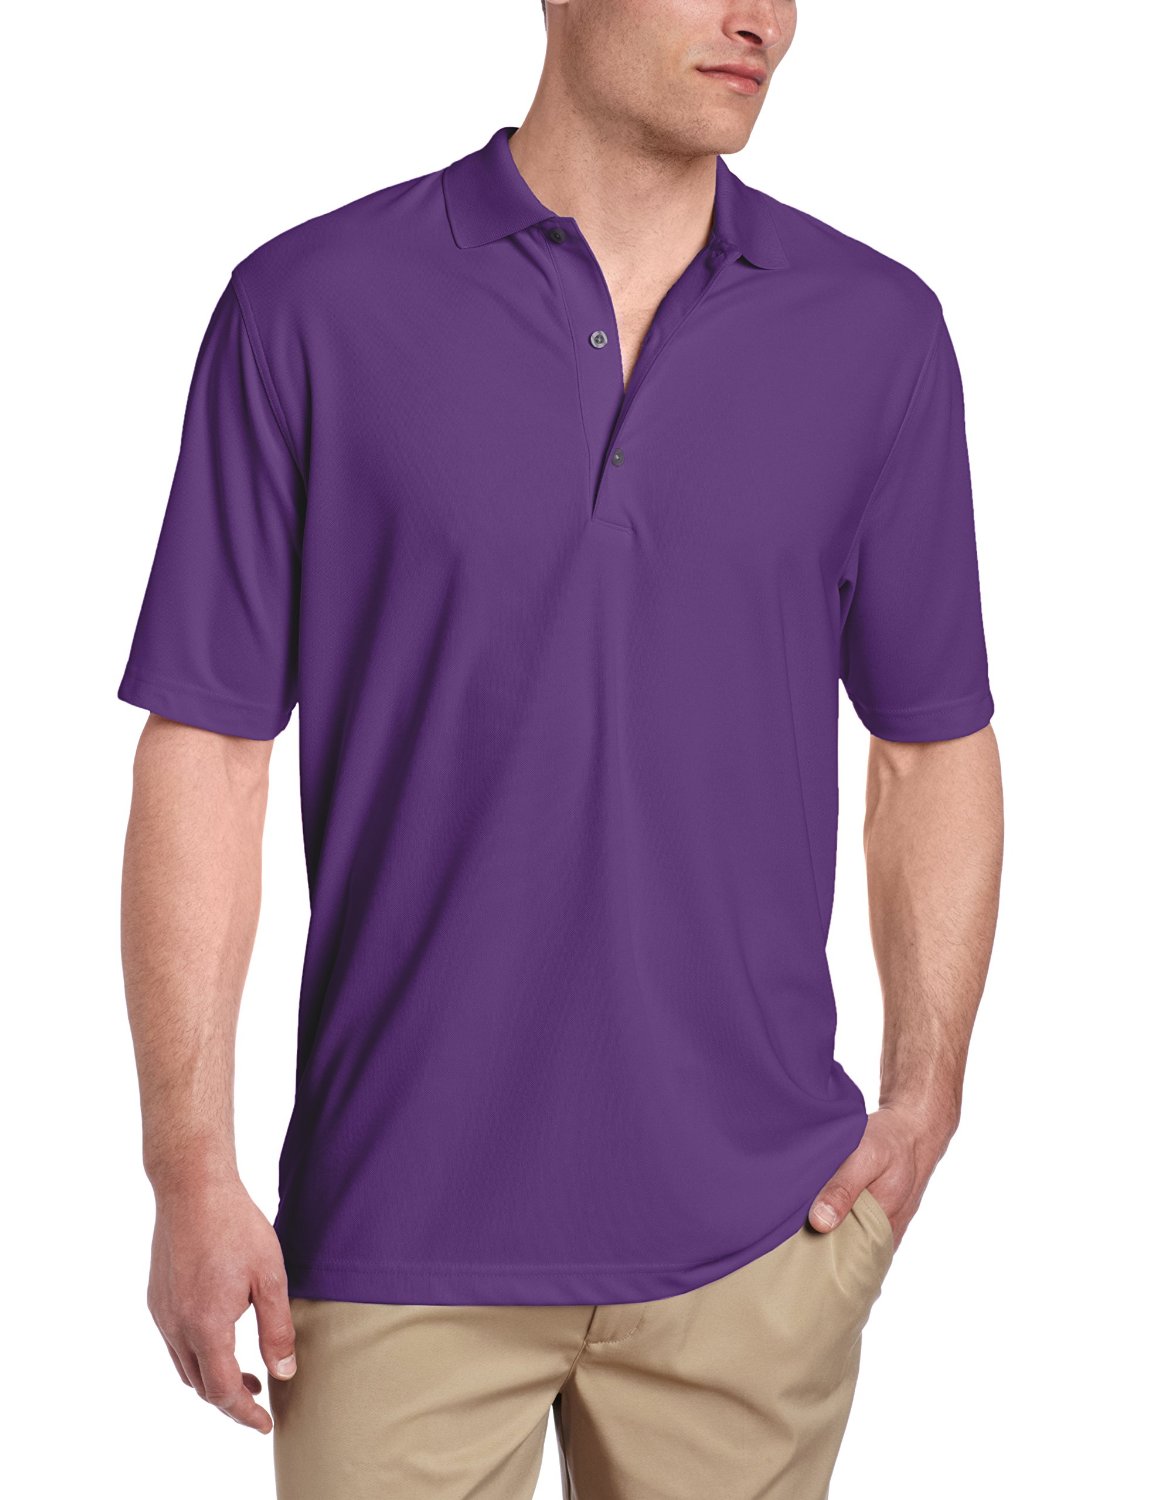 Greg Norman Mens ProTek Micro Pique Golf Polo Shirts